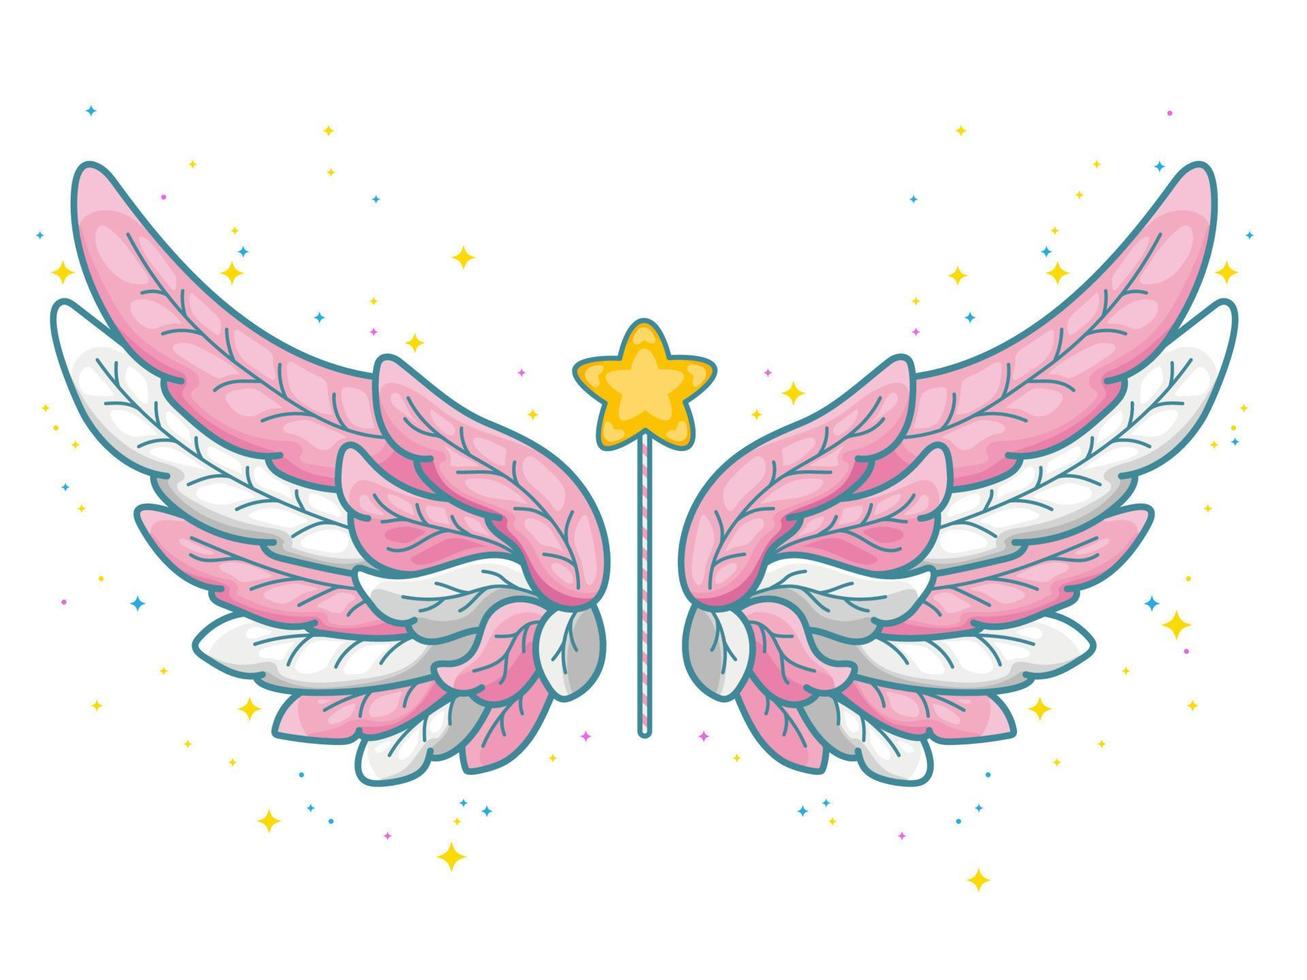 ali magiche in carino stile principessa, tavolozza rosa e grigio. ali d'angelo larghe e bacchetta magica con polvere di stelle. illustrazione vettoriale